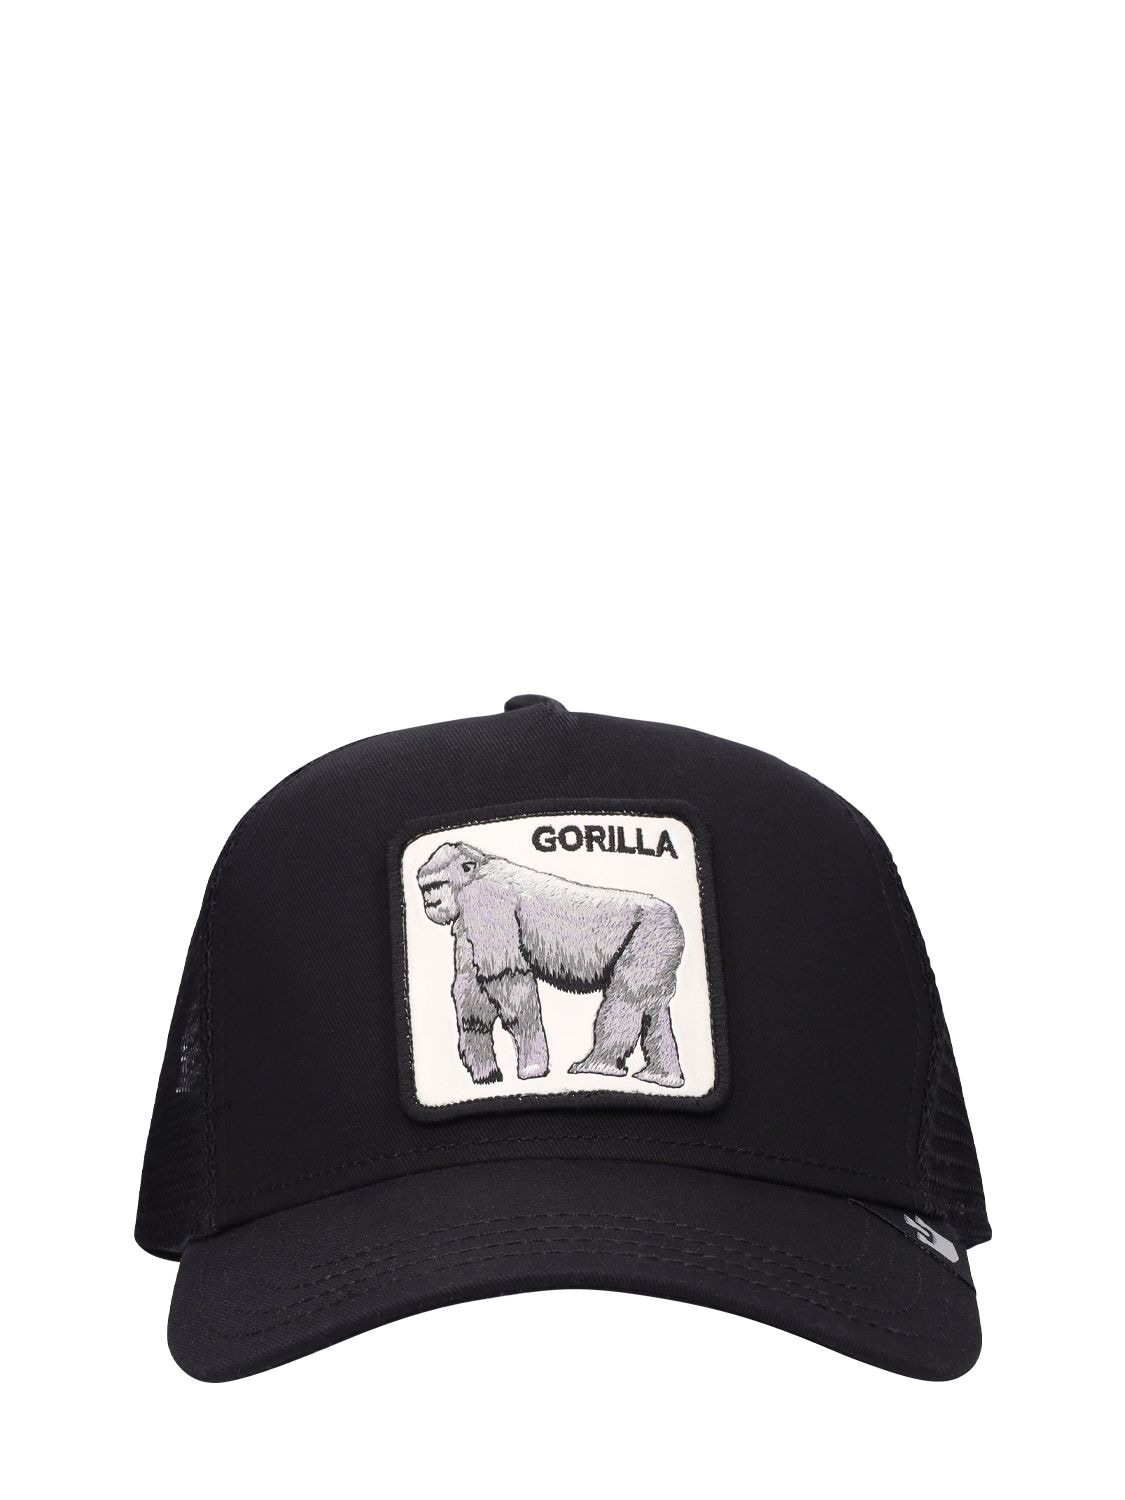 Goorin Bros The Gorilla Trucker Hat W/patch In Black